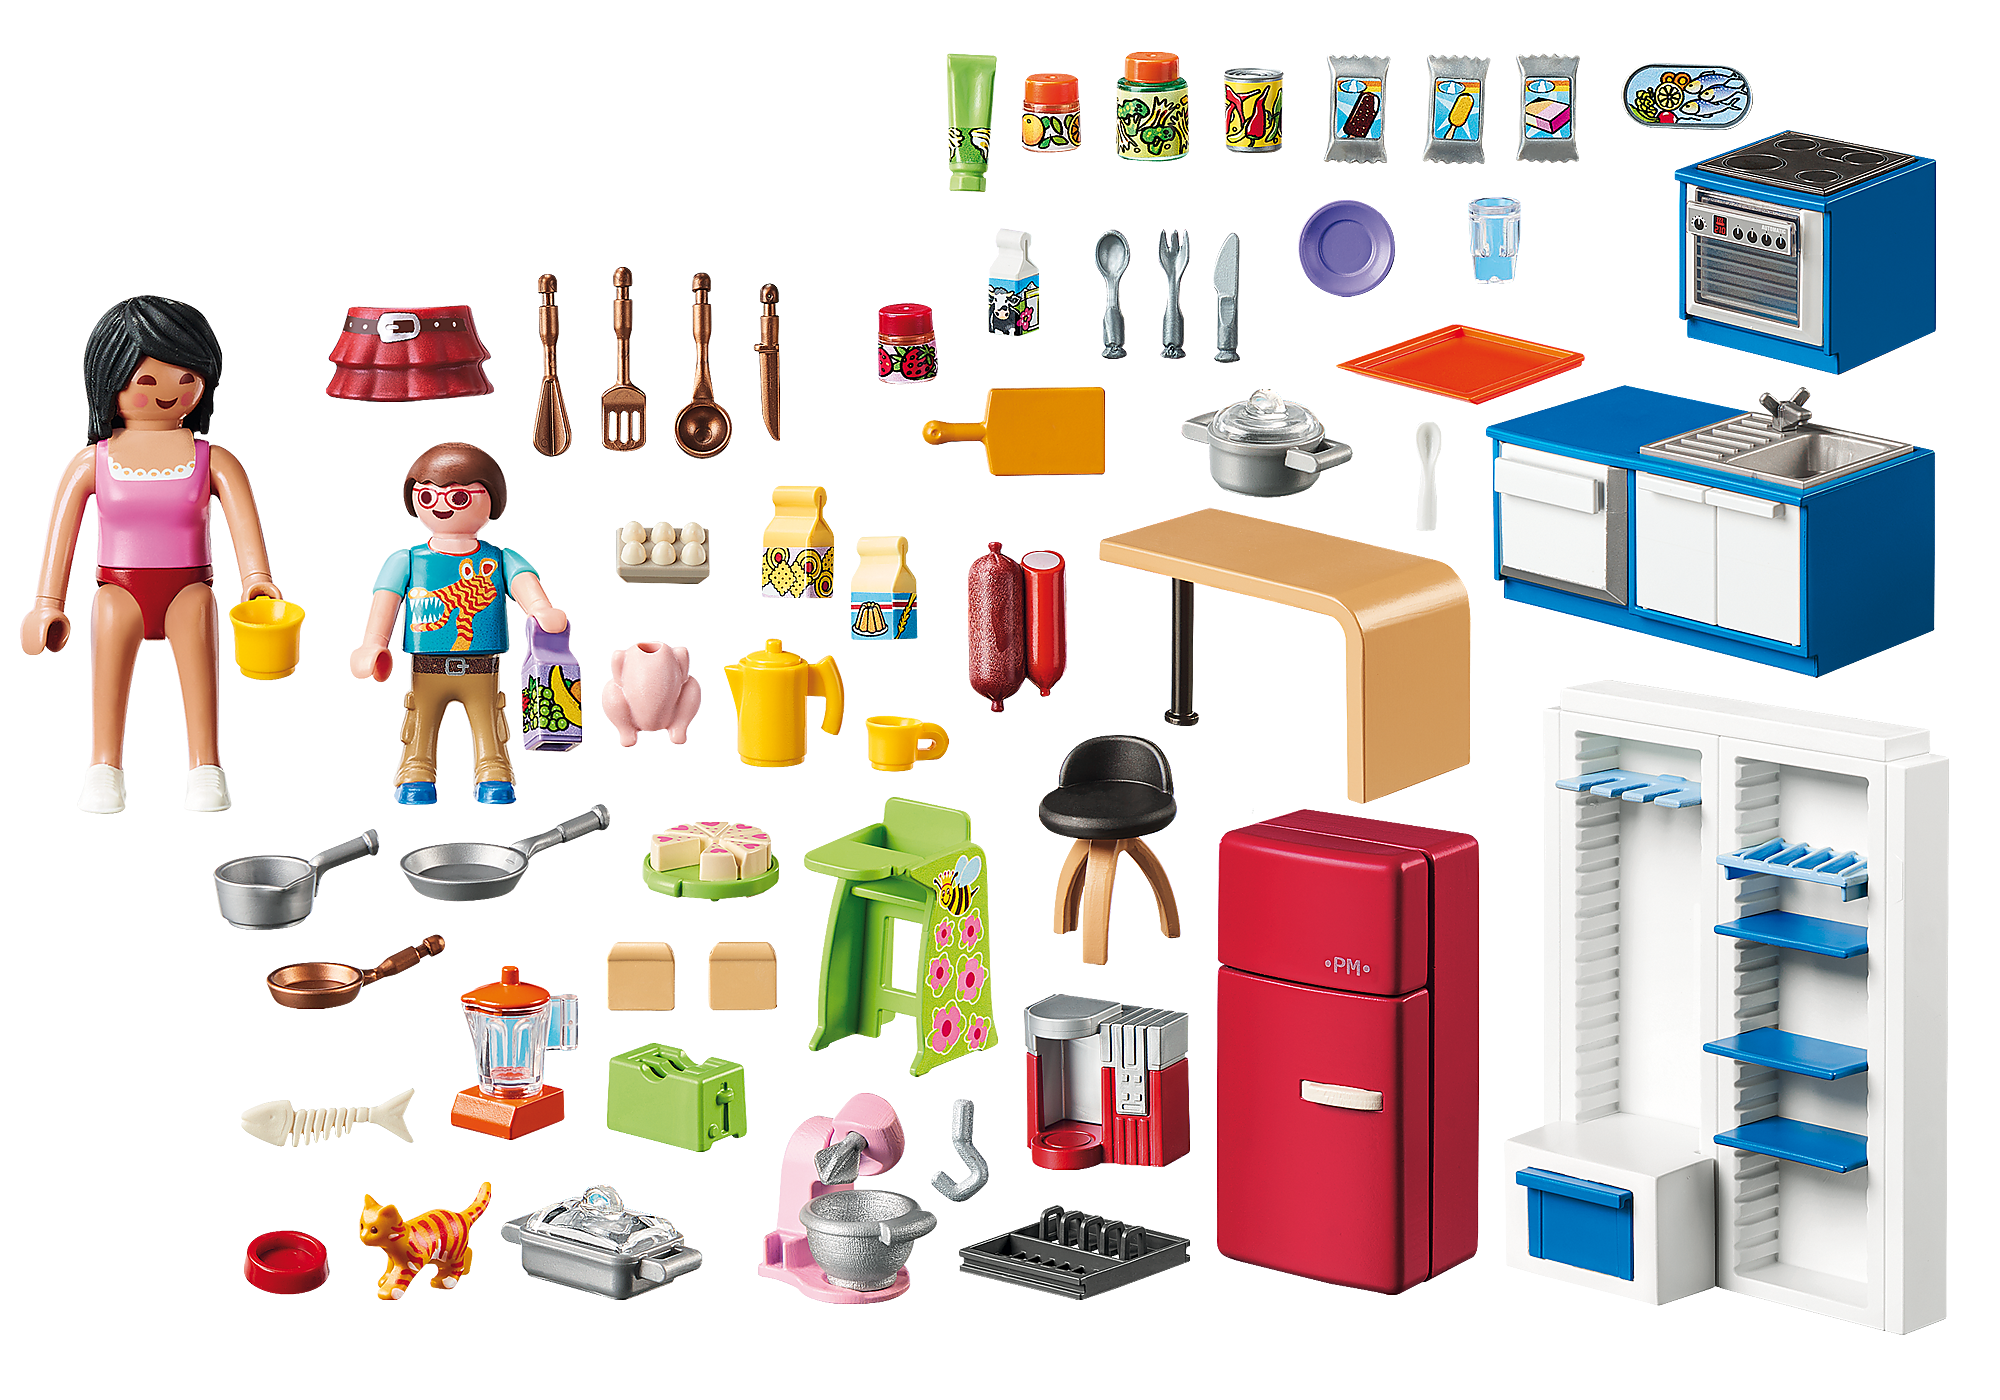 Playmobil® - Cuisine familiale - 70206 - Playmobil® La Maison